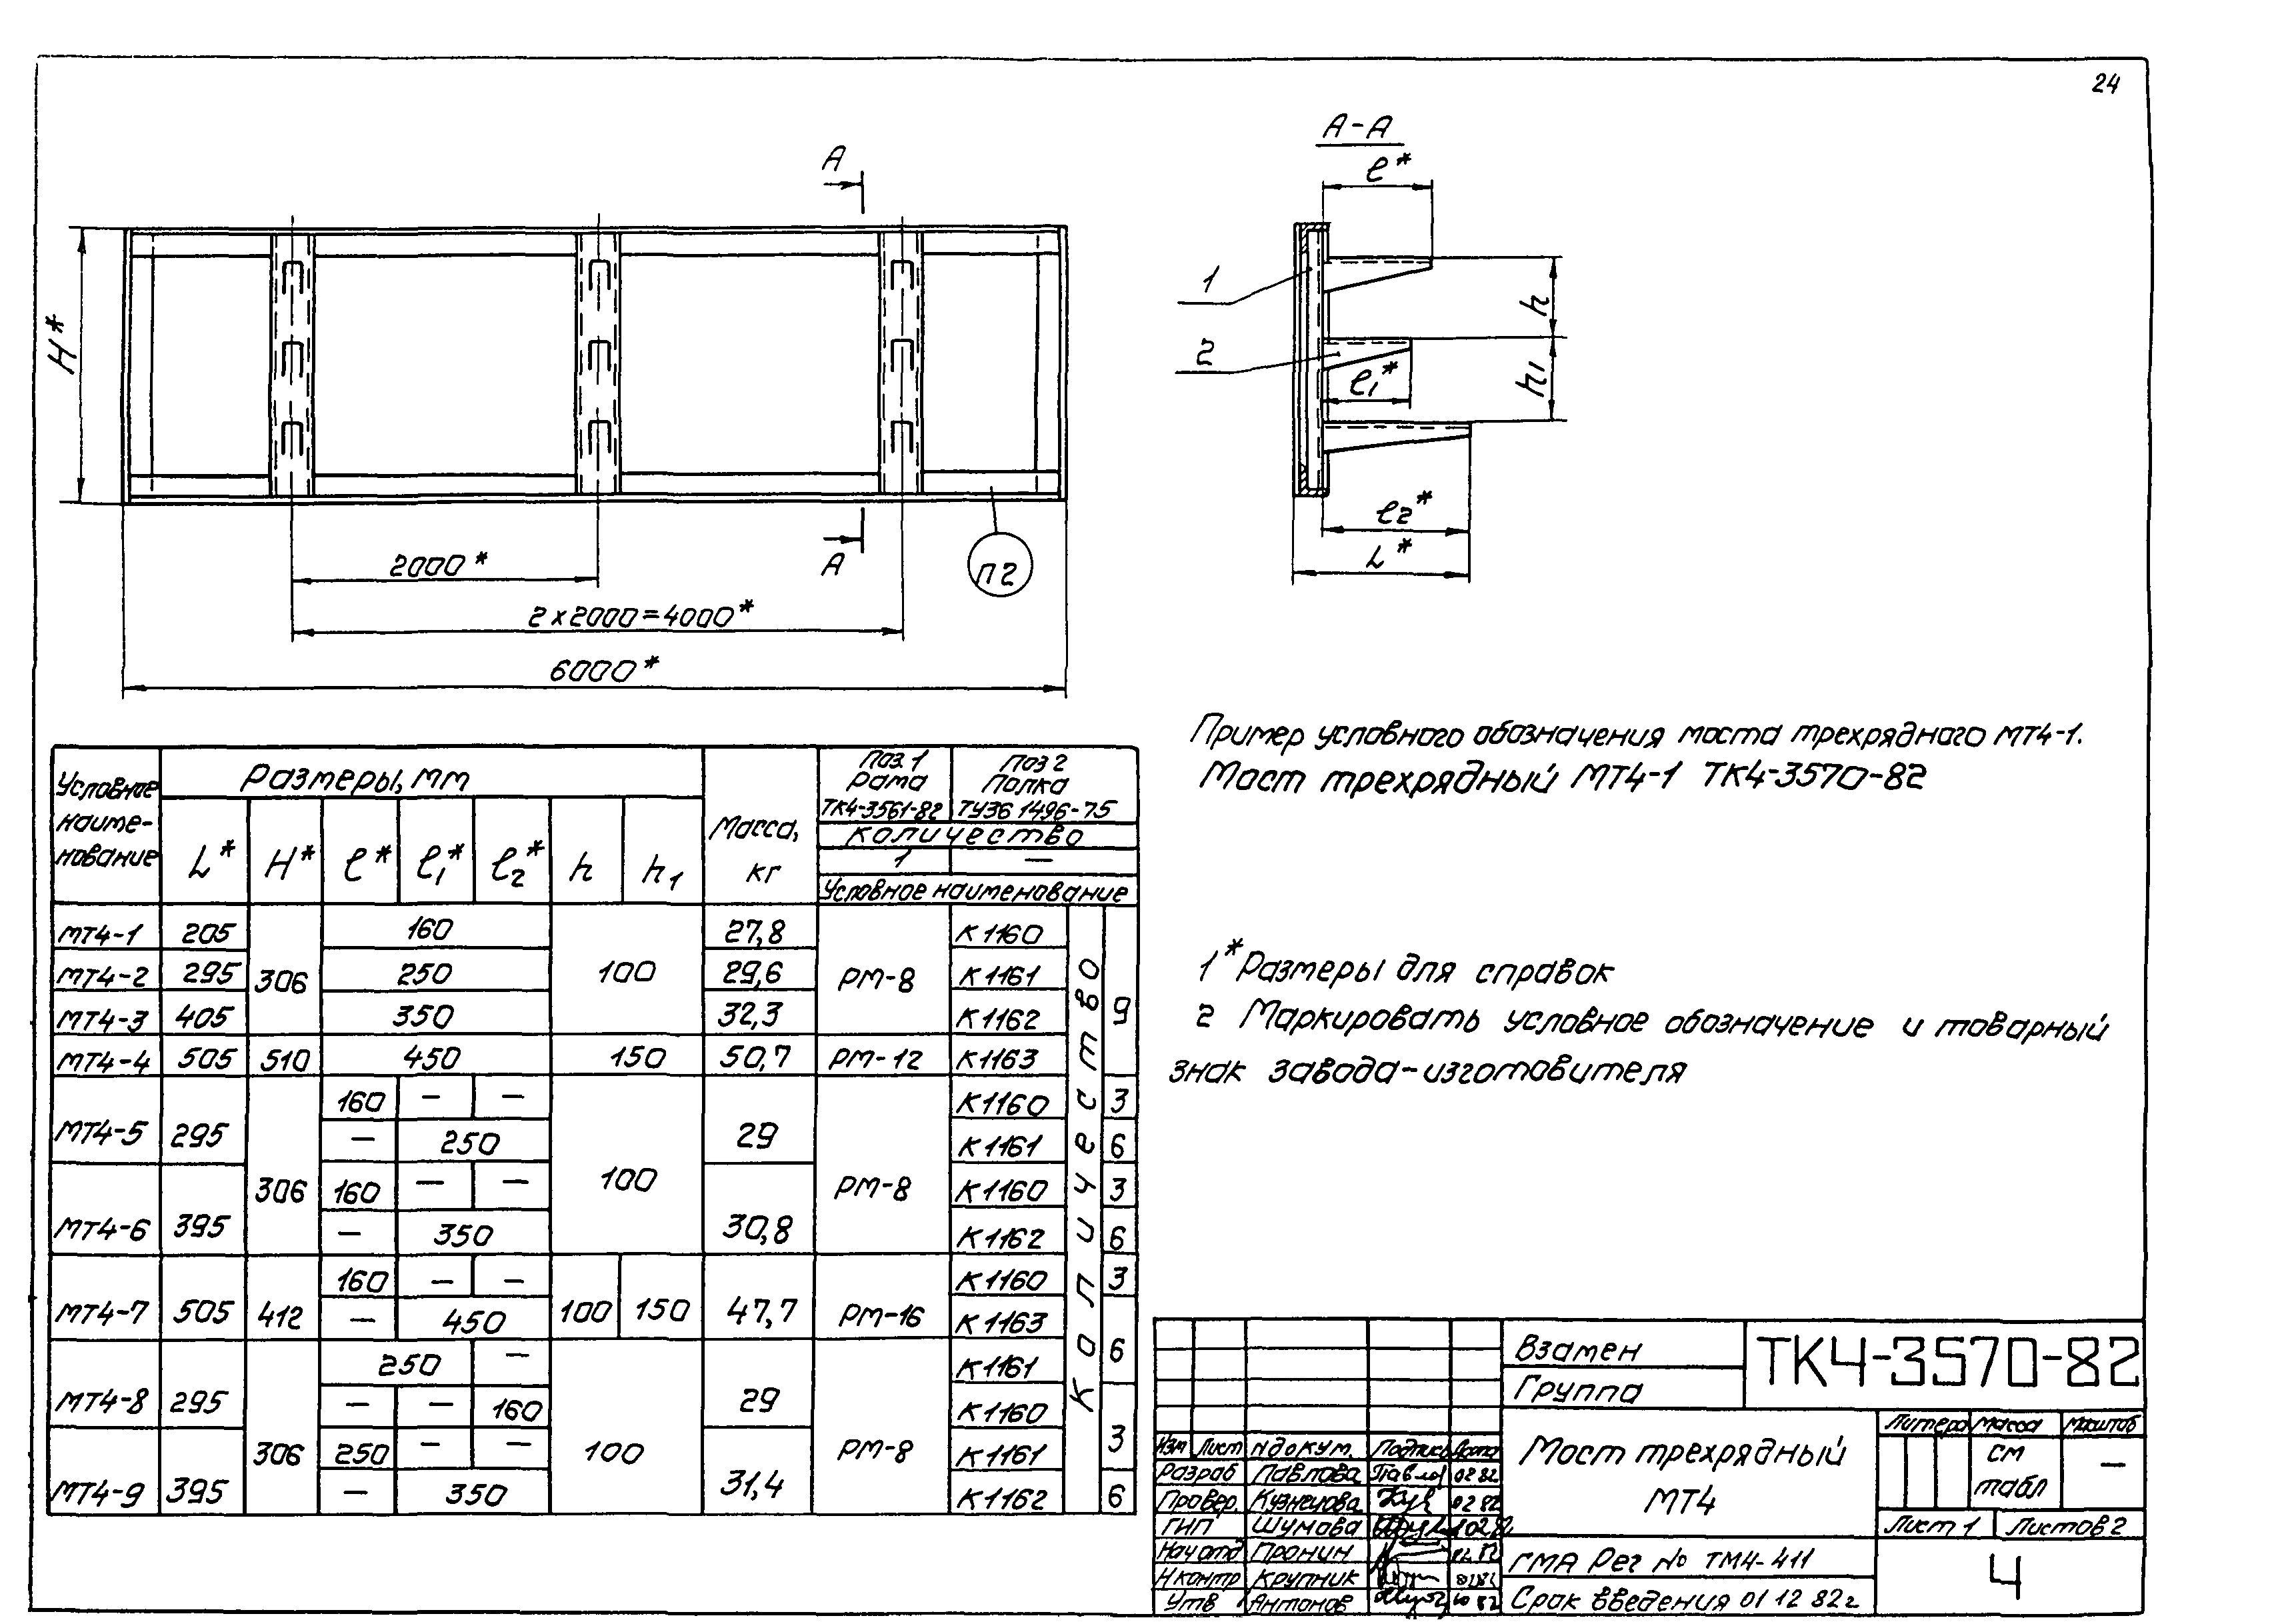 ТК 4-3081-82